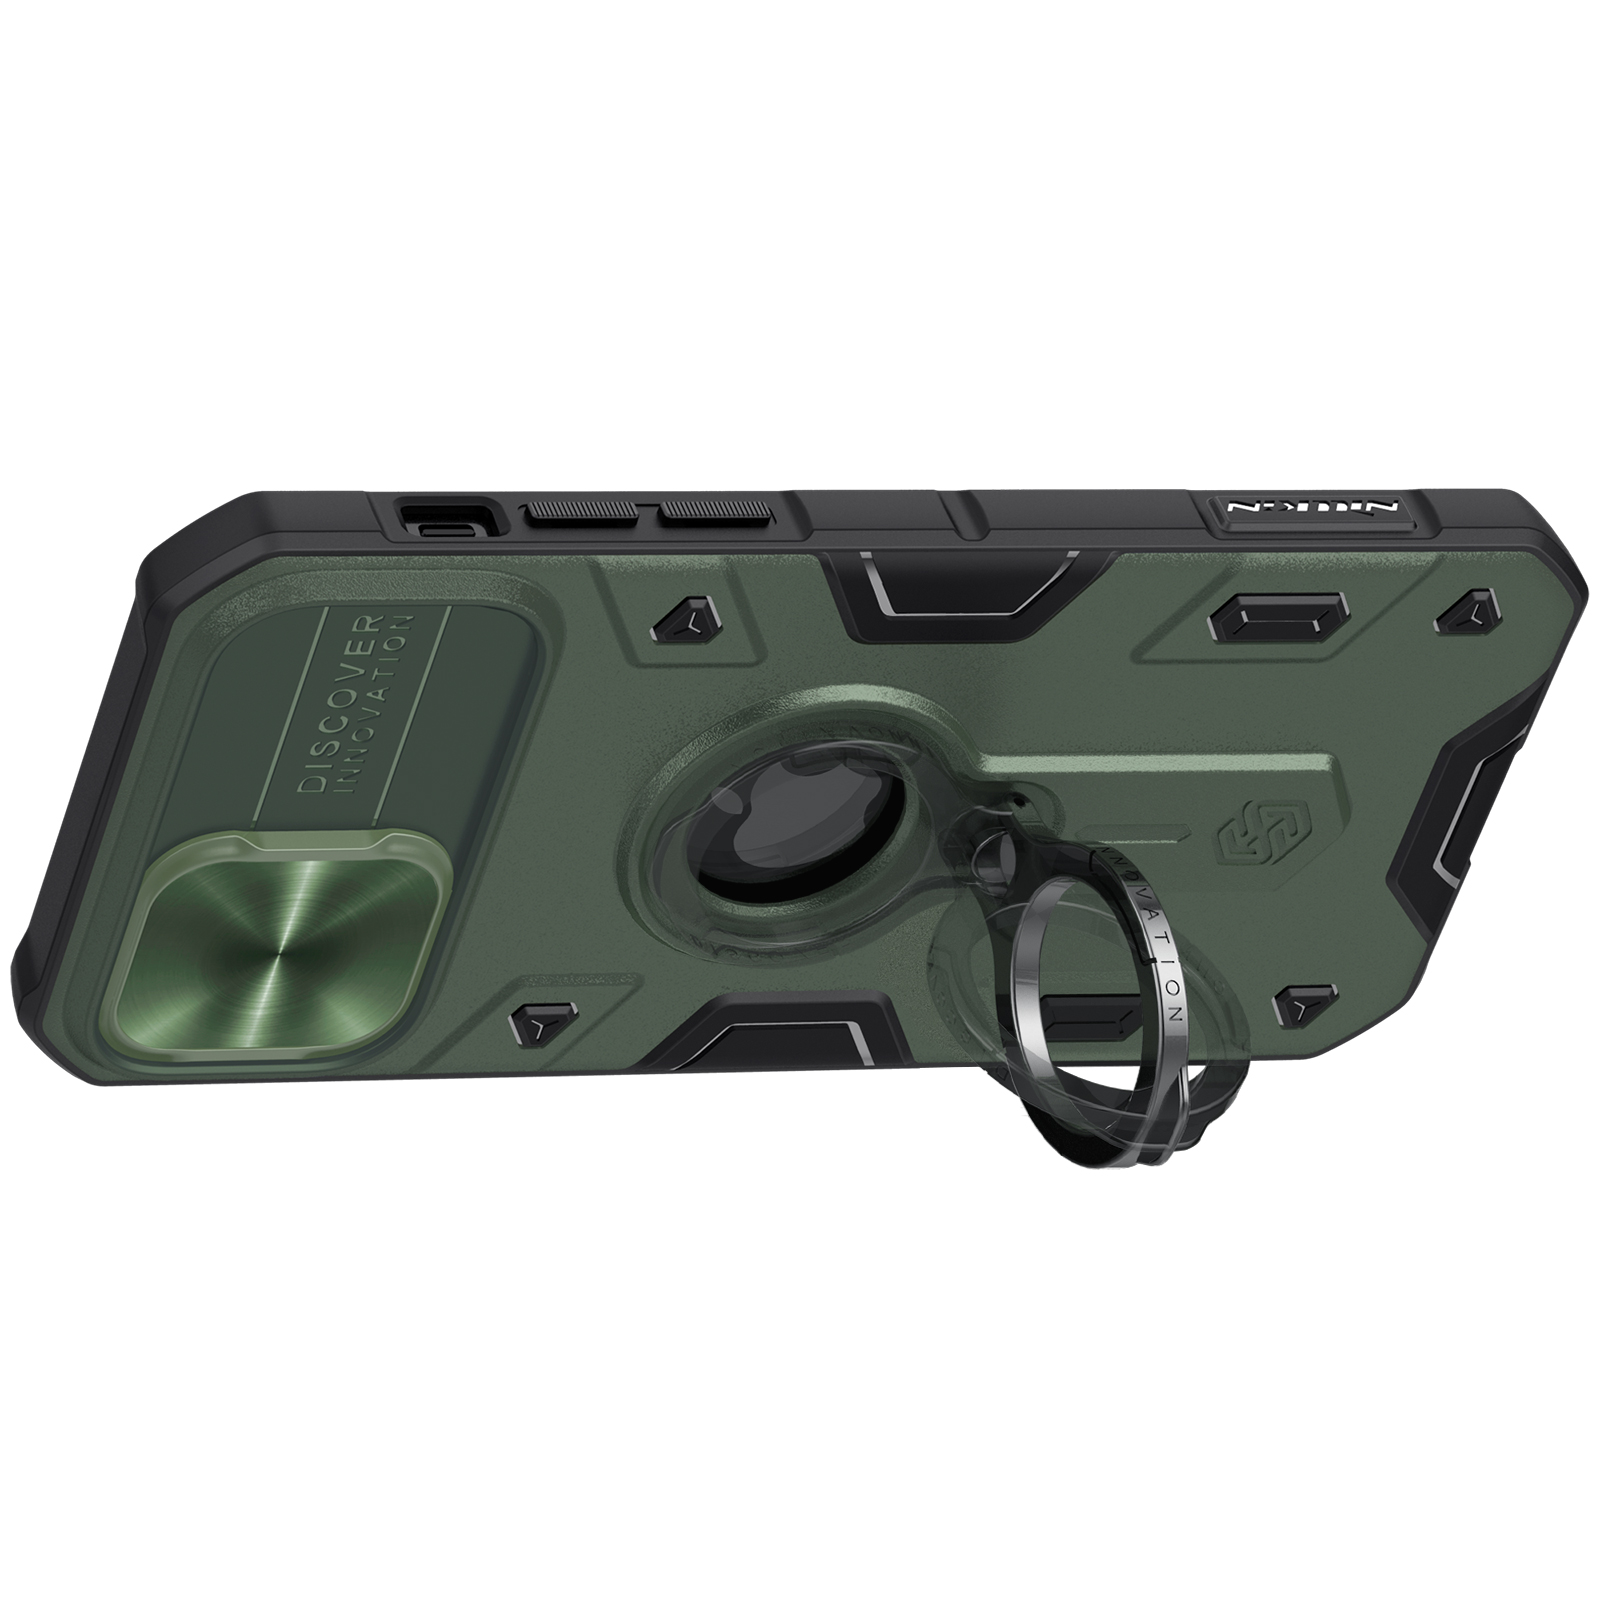 Ốp Lưng Nillkin CamShield Armor Cho iPhone 12 & 12 Pro / iPhone 12 Pro Max - Hàng Nhập Khẩu